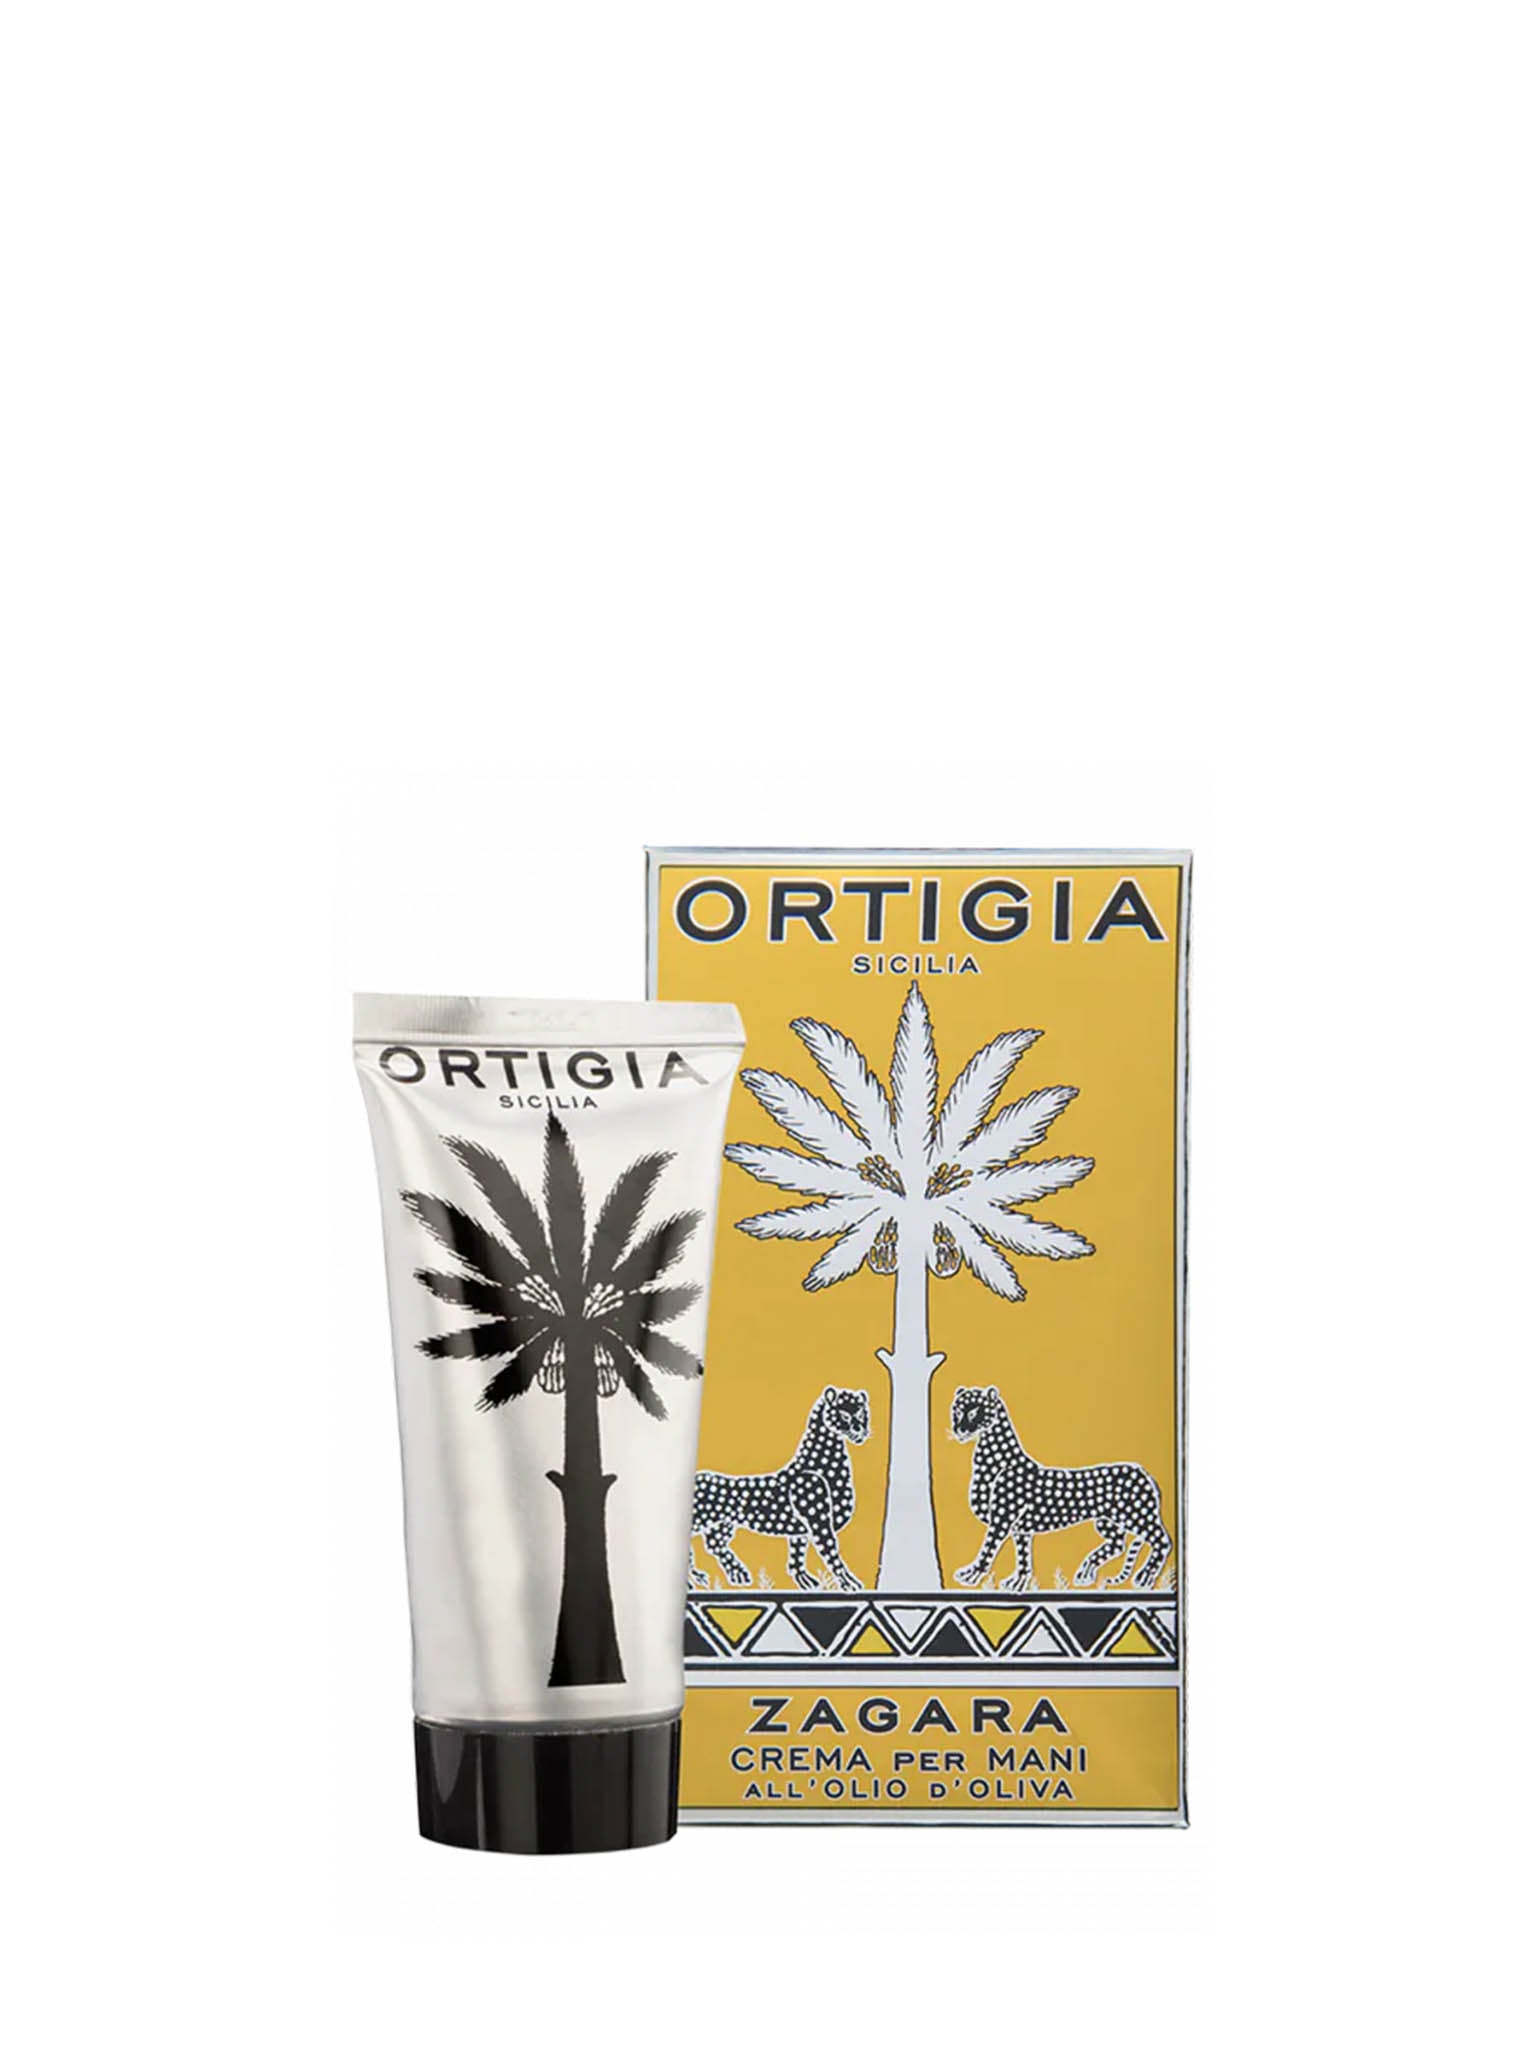 Ortigia Zagara Hand Cream - 80ml Cutout with packaging